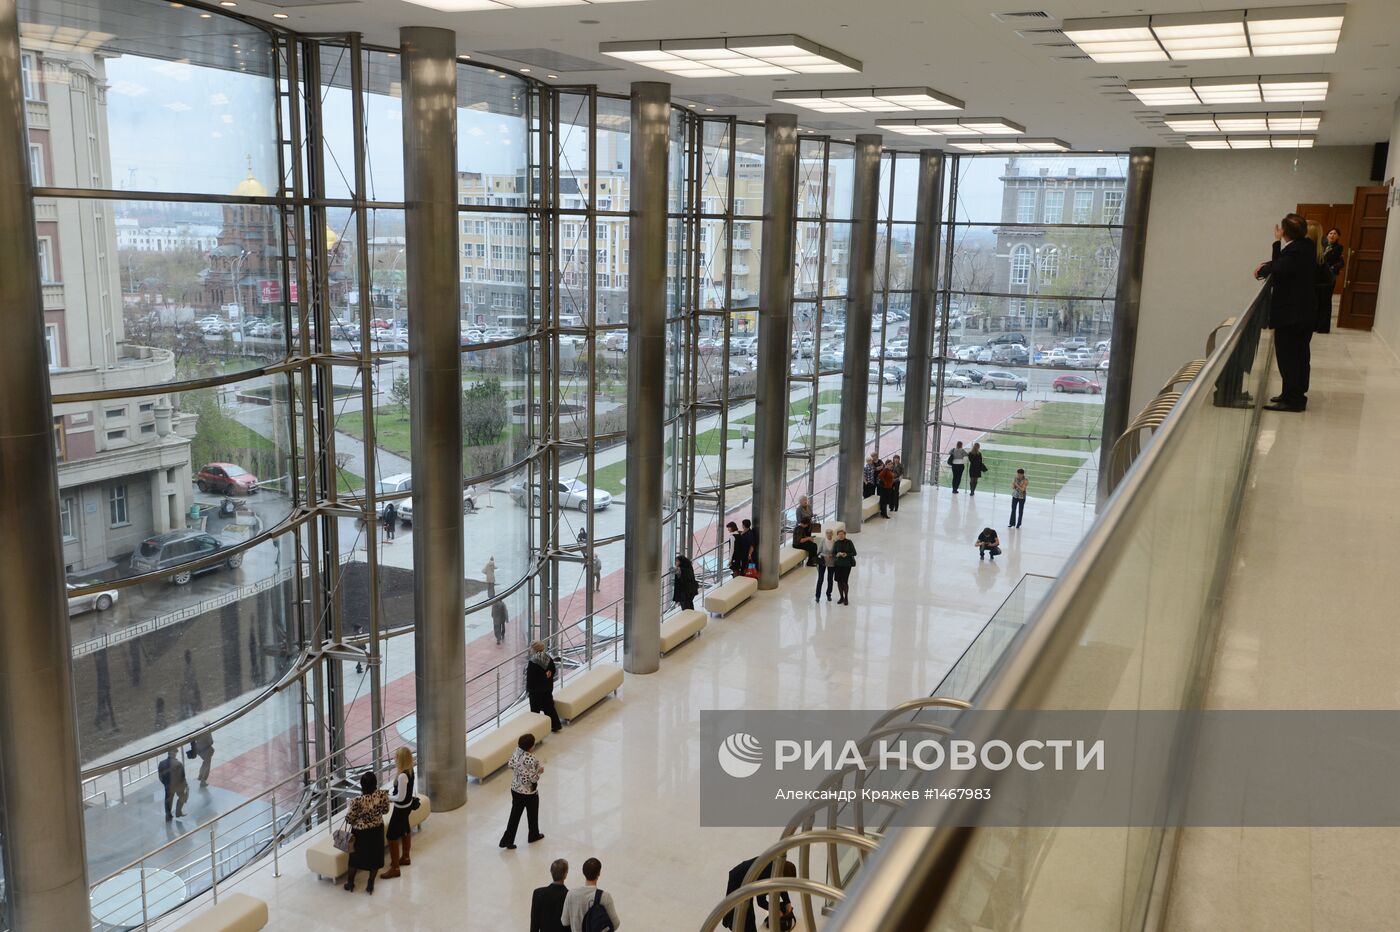 Строители передали музыкантам новый зал новосибирской филармонии